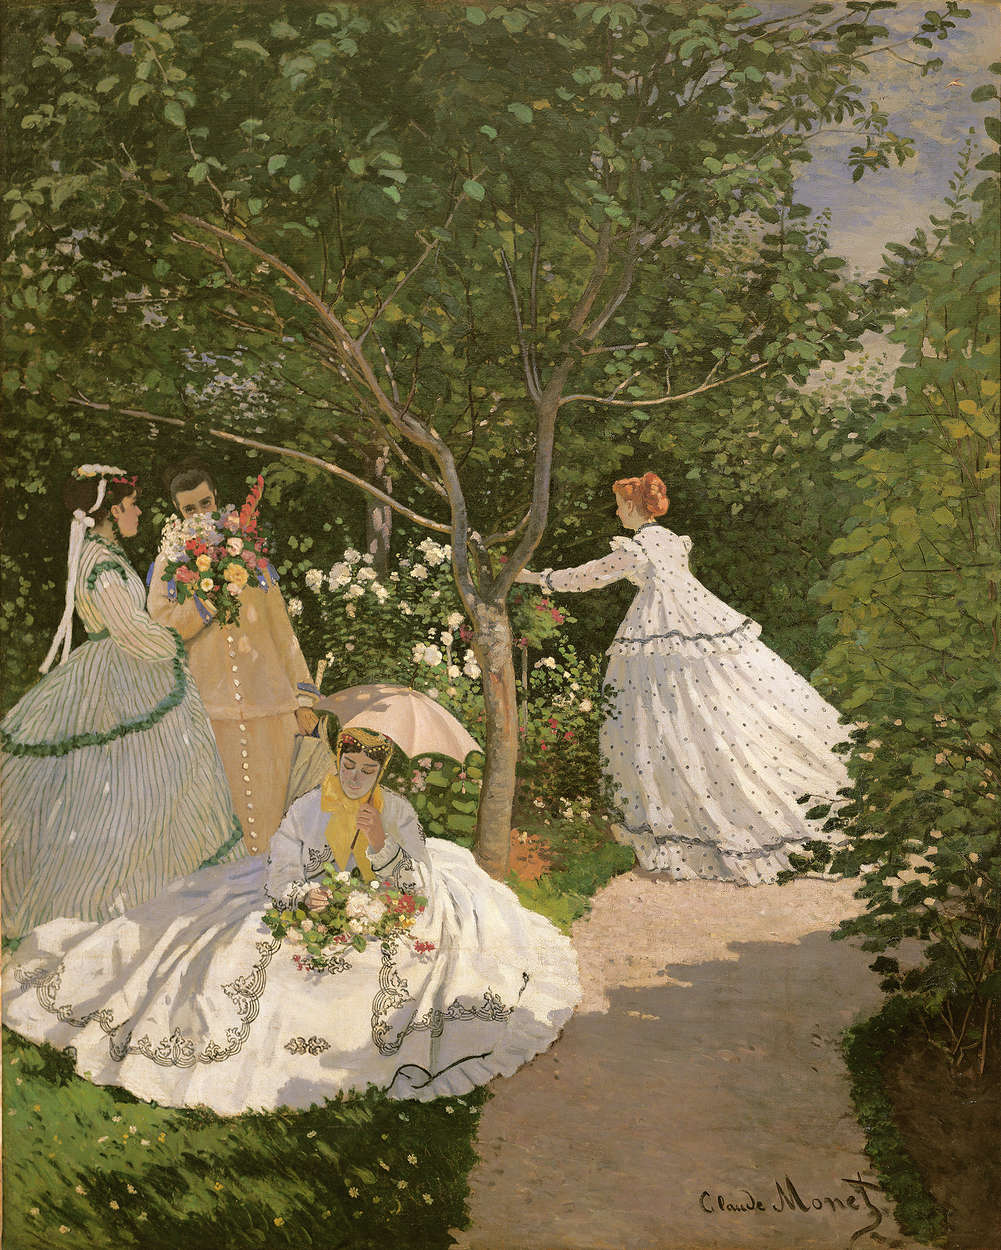             Papier peint panoramique "Femmes au jardin" de Claude Monet
        